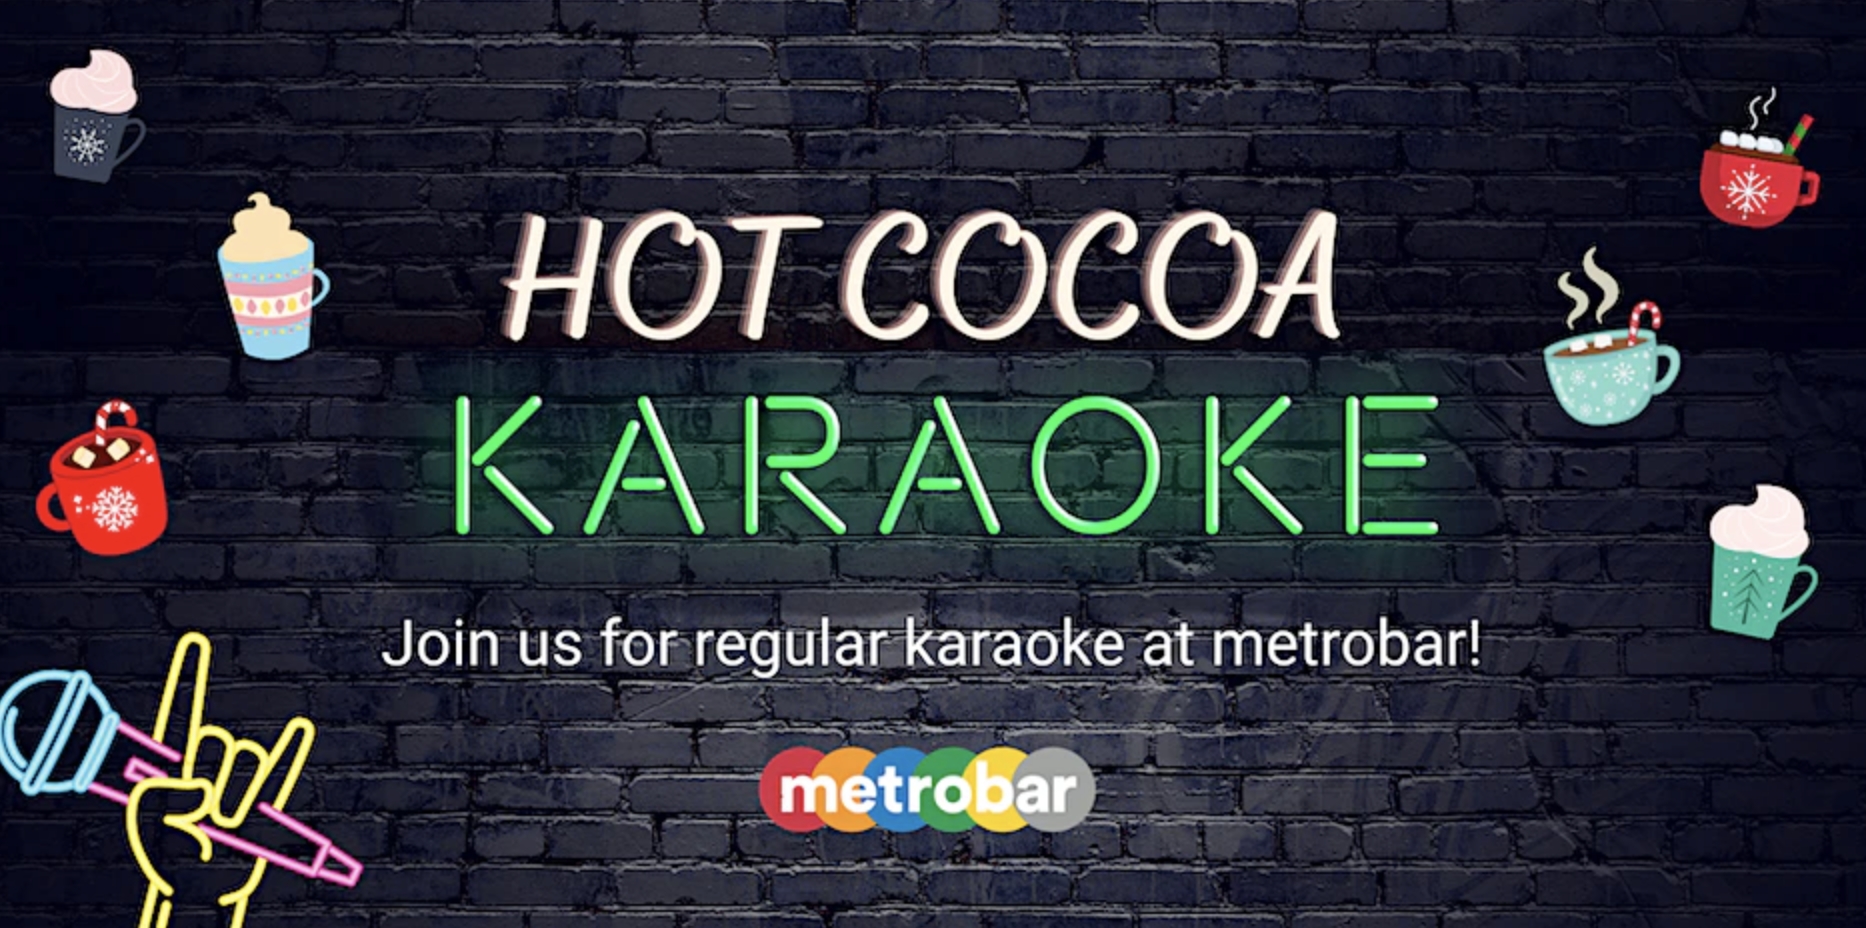 Hot Cocoa Karaoke Party at metrobar